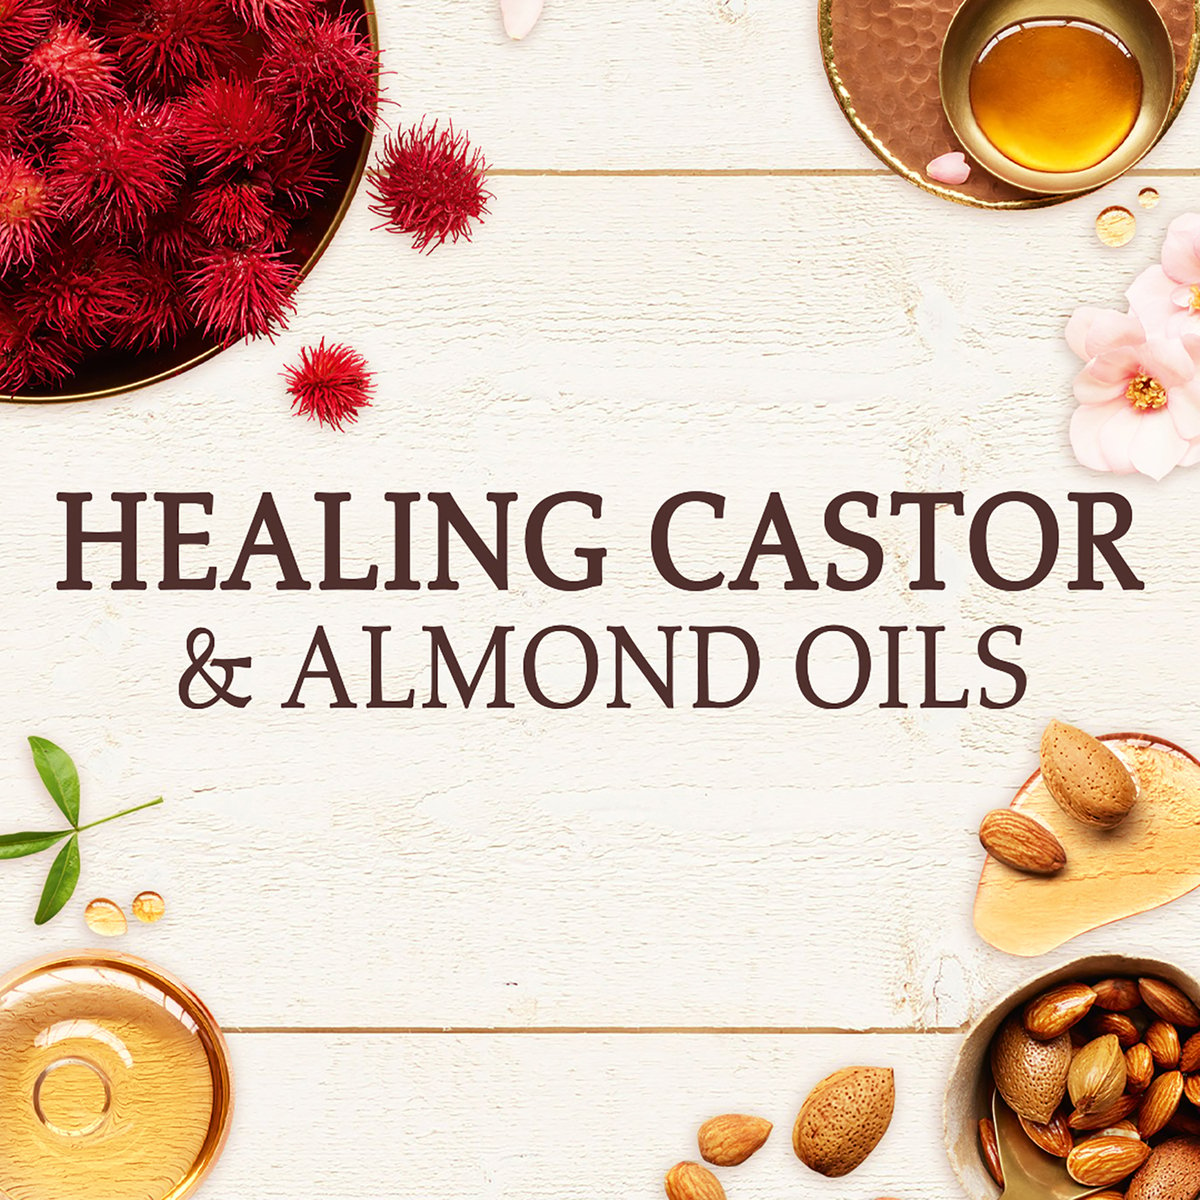 Garnier Ultra Doux Shampoo Healing Castor & Almond Oils 200 ml